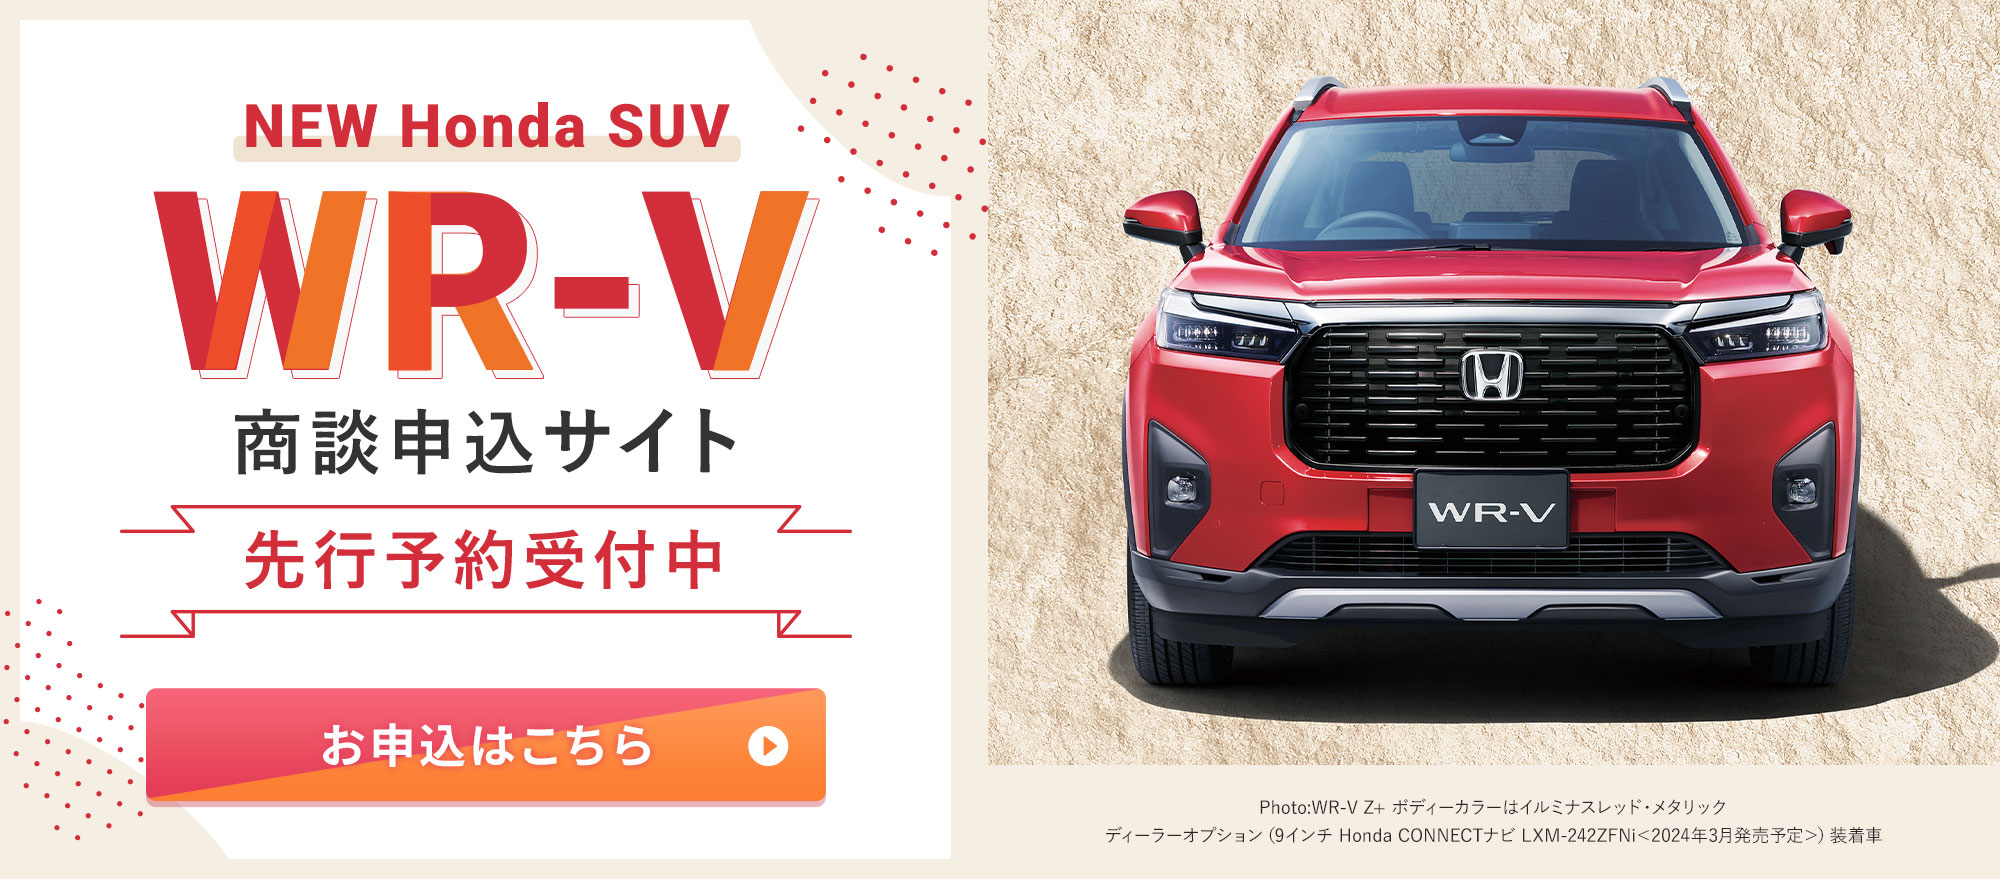 NEW Honda SUV WR-V商談申込サイト 先行予約受付中 お申込はこちら